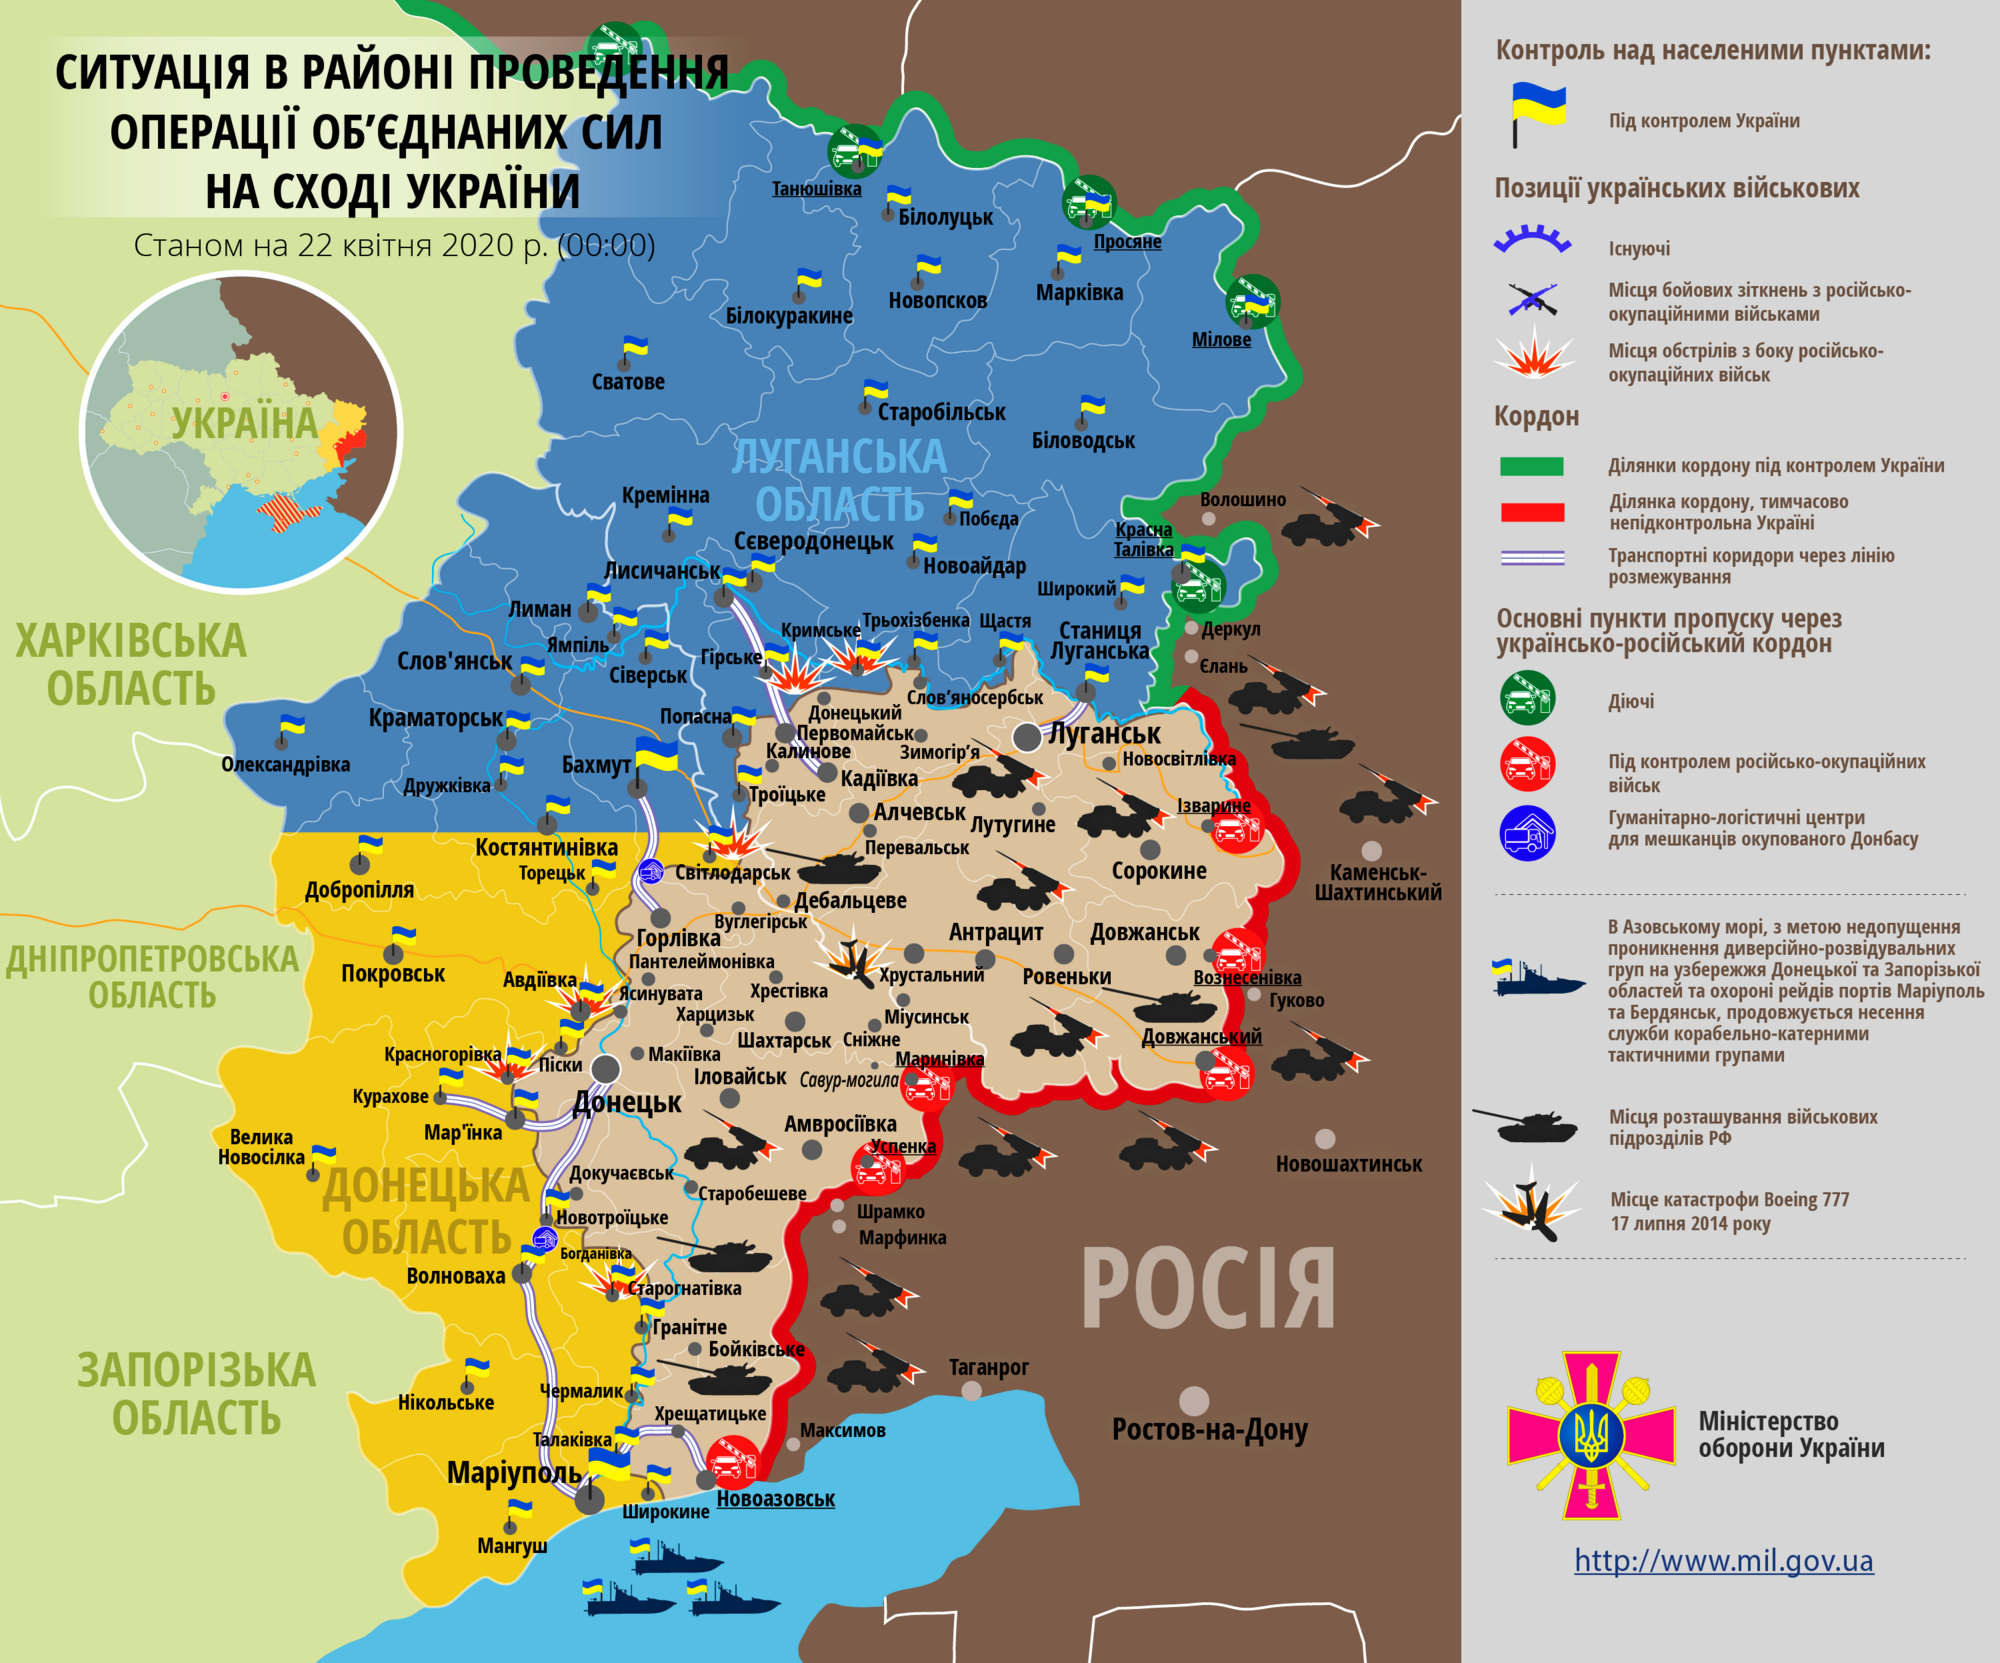 Ситуация в зоне проведения ООС на Донбассе 22 апреля